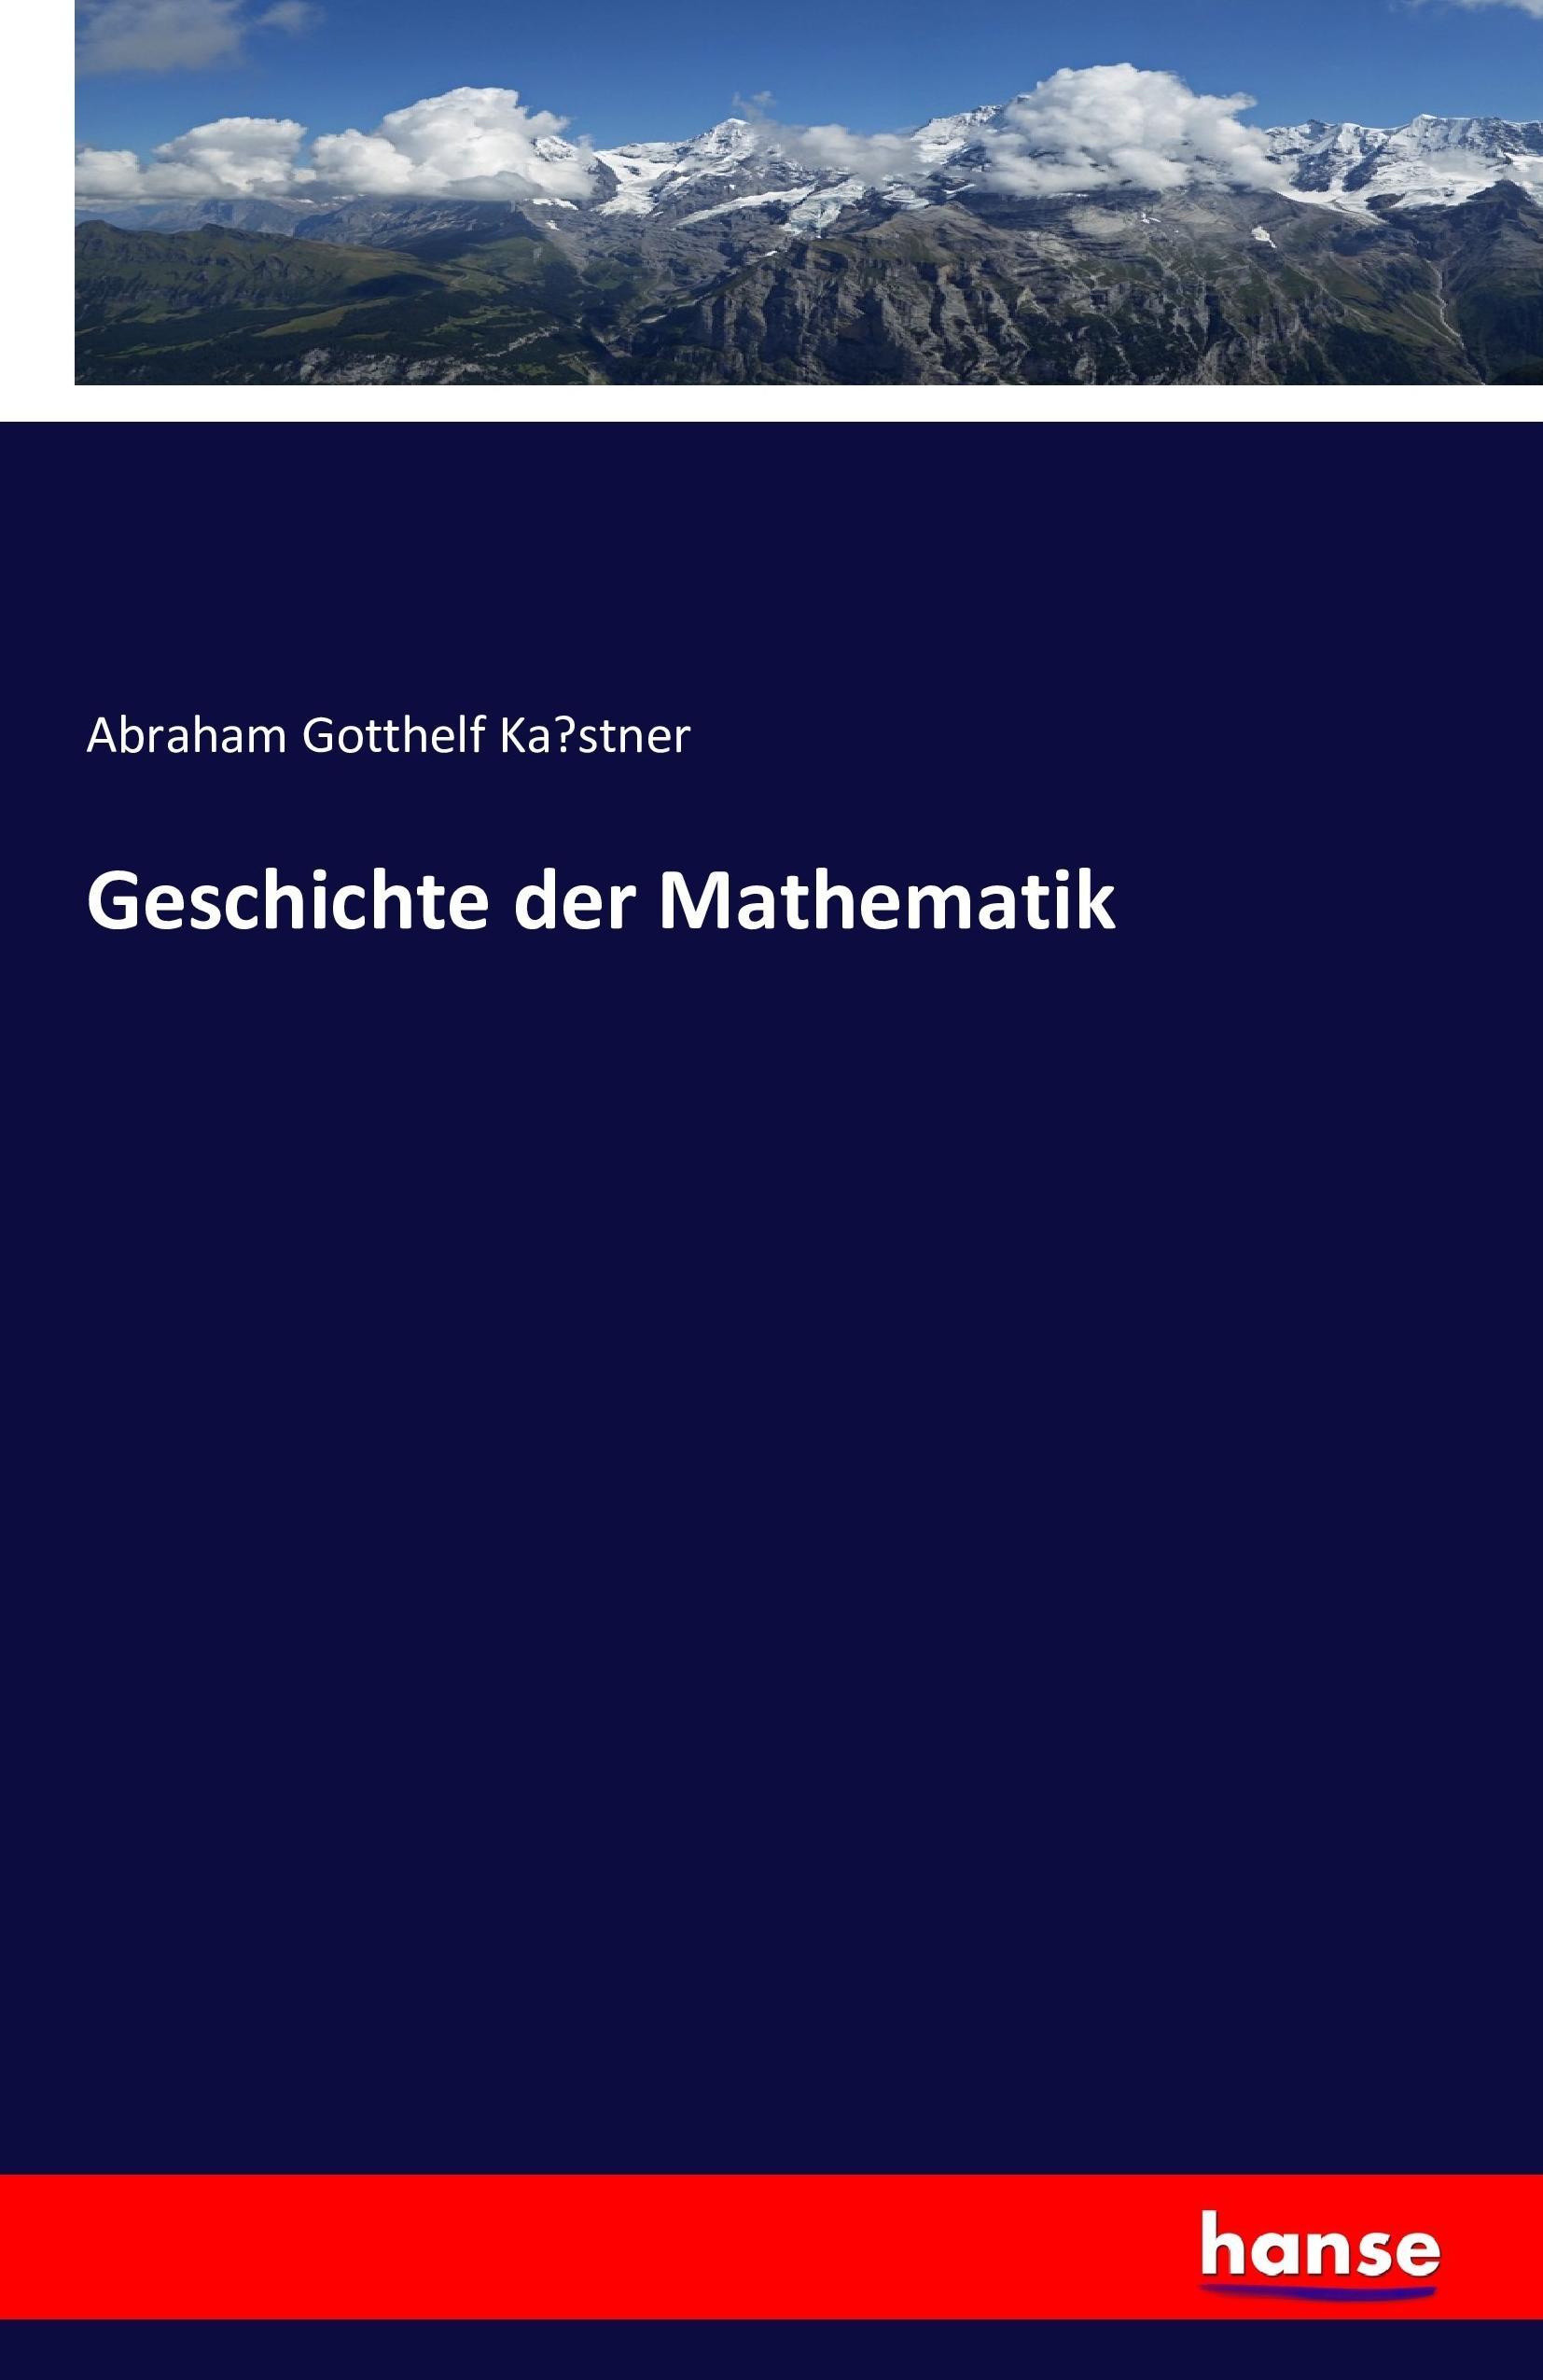 Geschichte der Mathematik - Kastner, Abraham Gotthelf